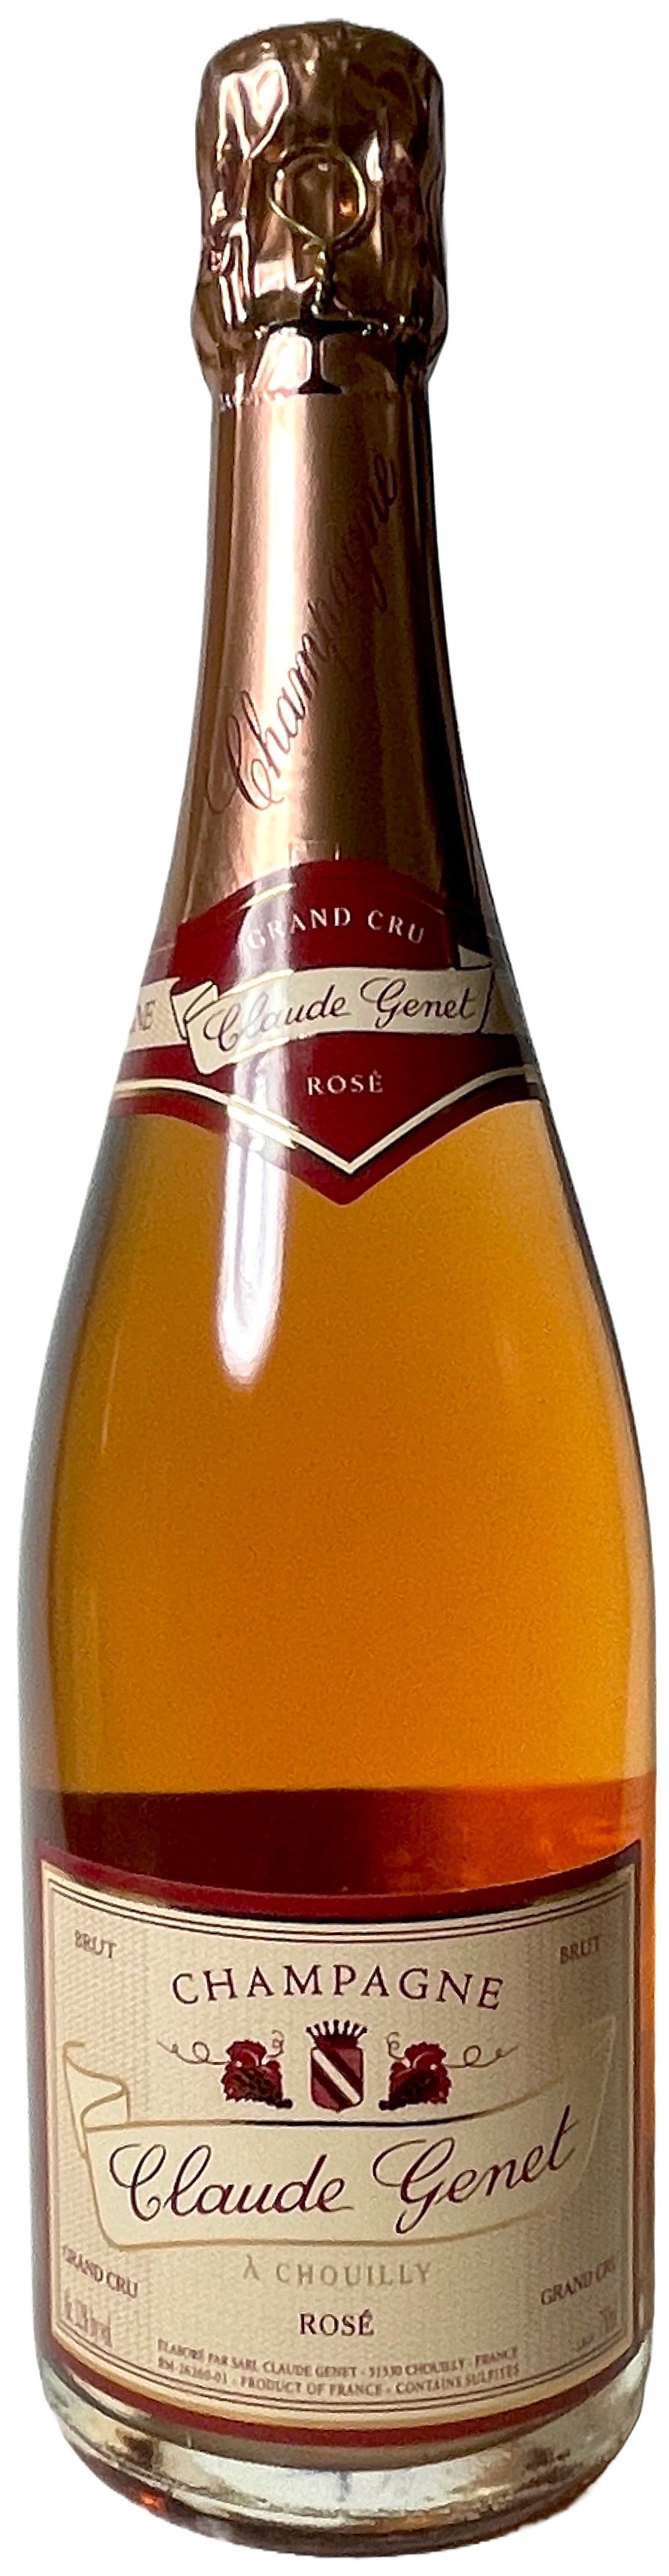 Grand Cru Rose Champagne NV